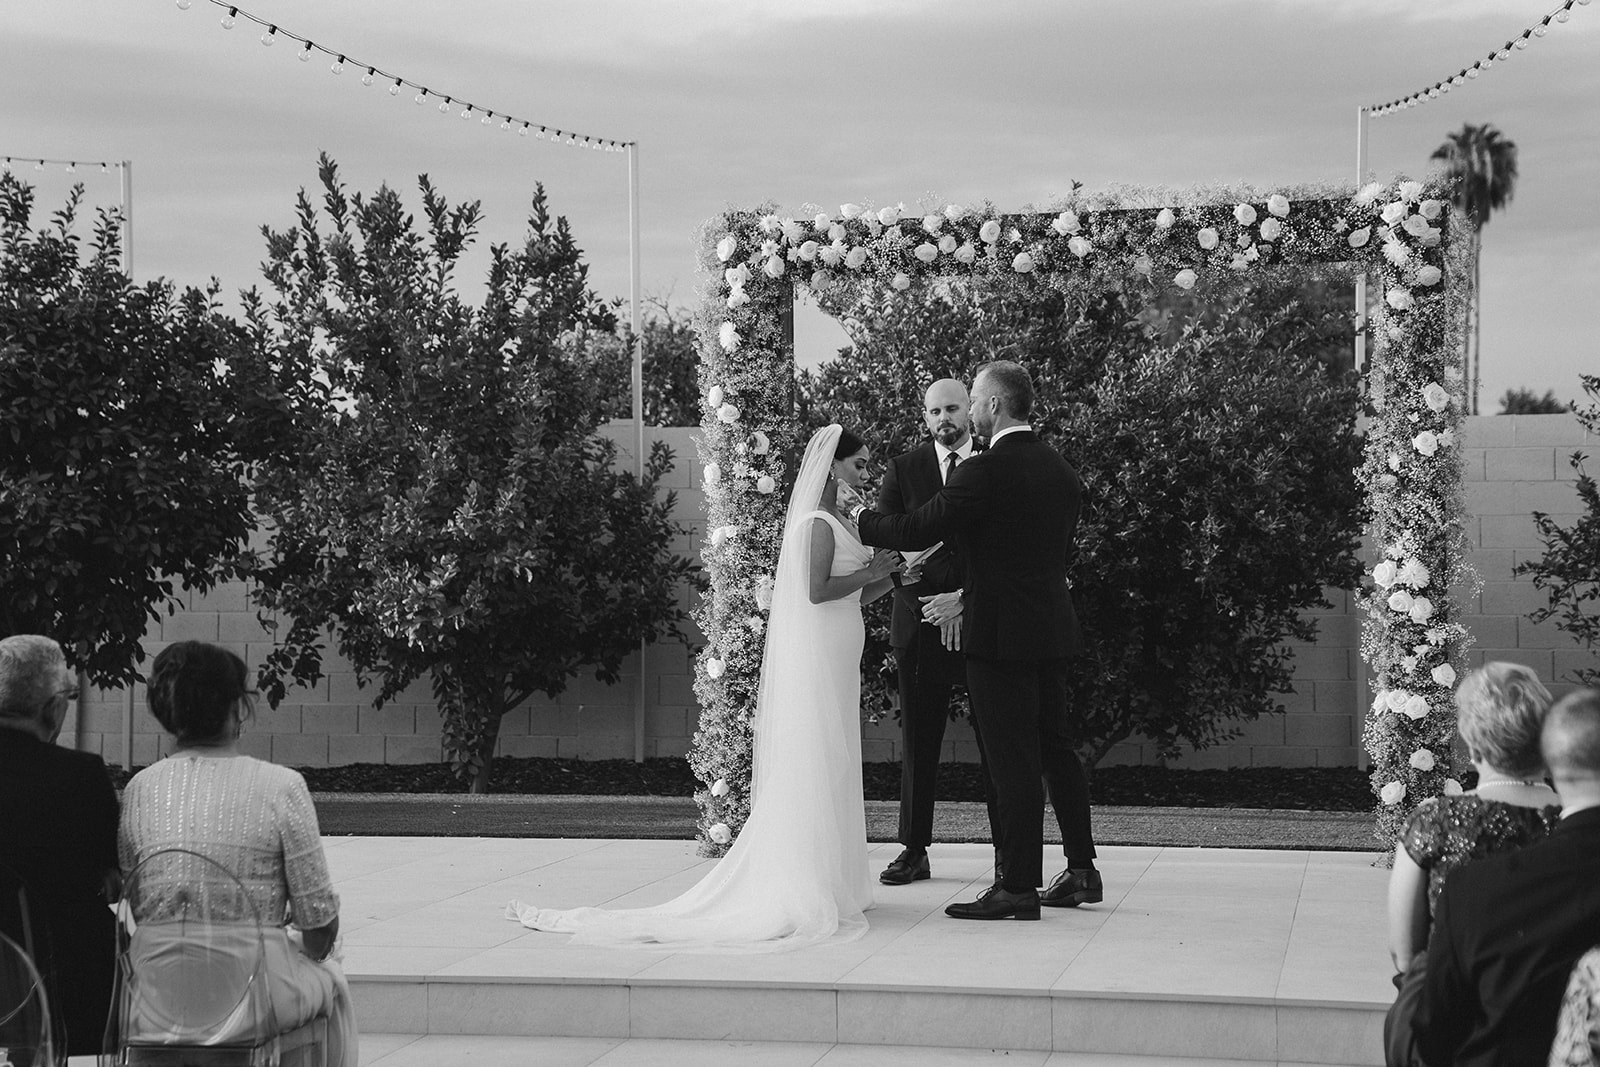 Wedding Ceremony in Mesa Arizona